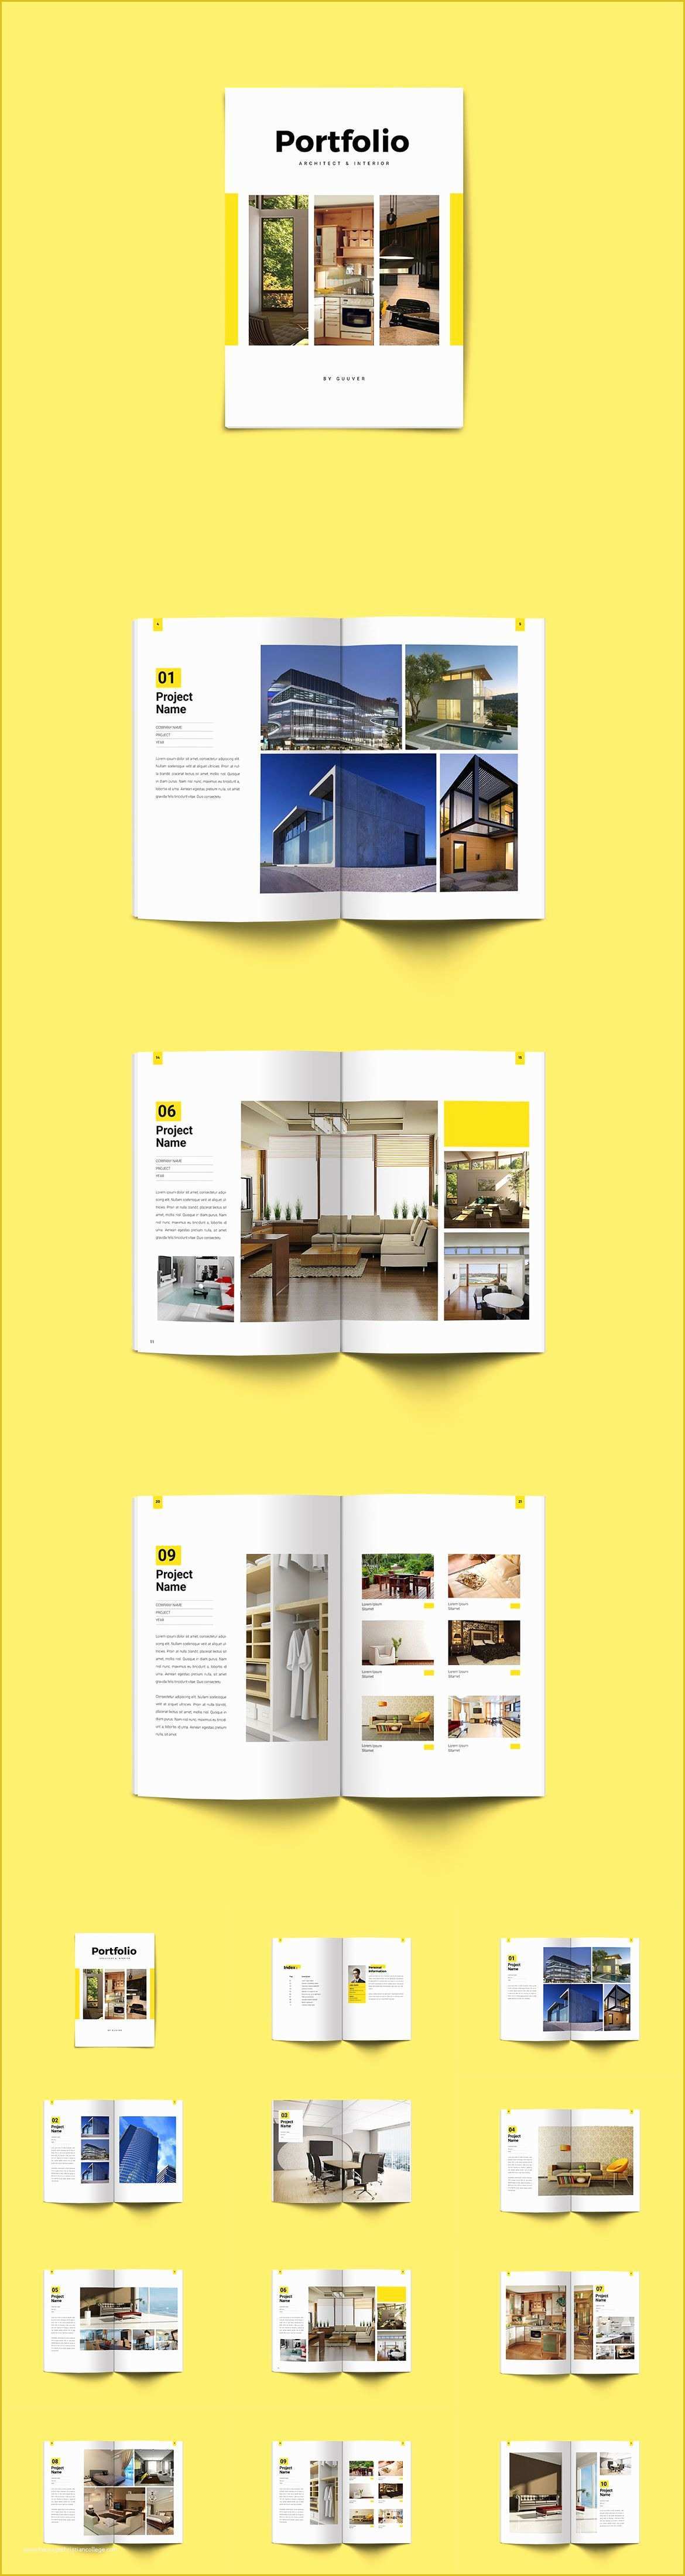 Architecture Portfolio Template Indesign Free Of Minimal Interior & Architecture Portfolio Brochure